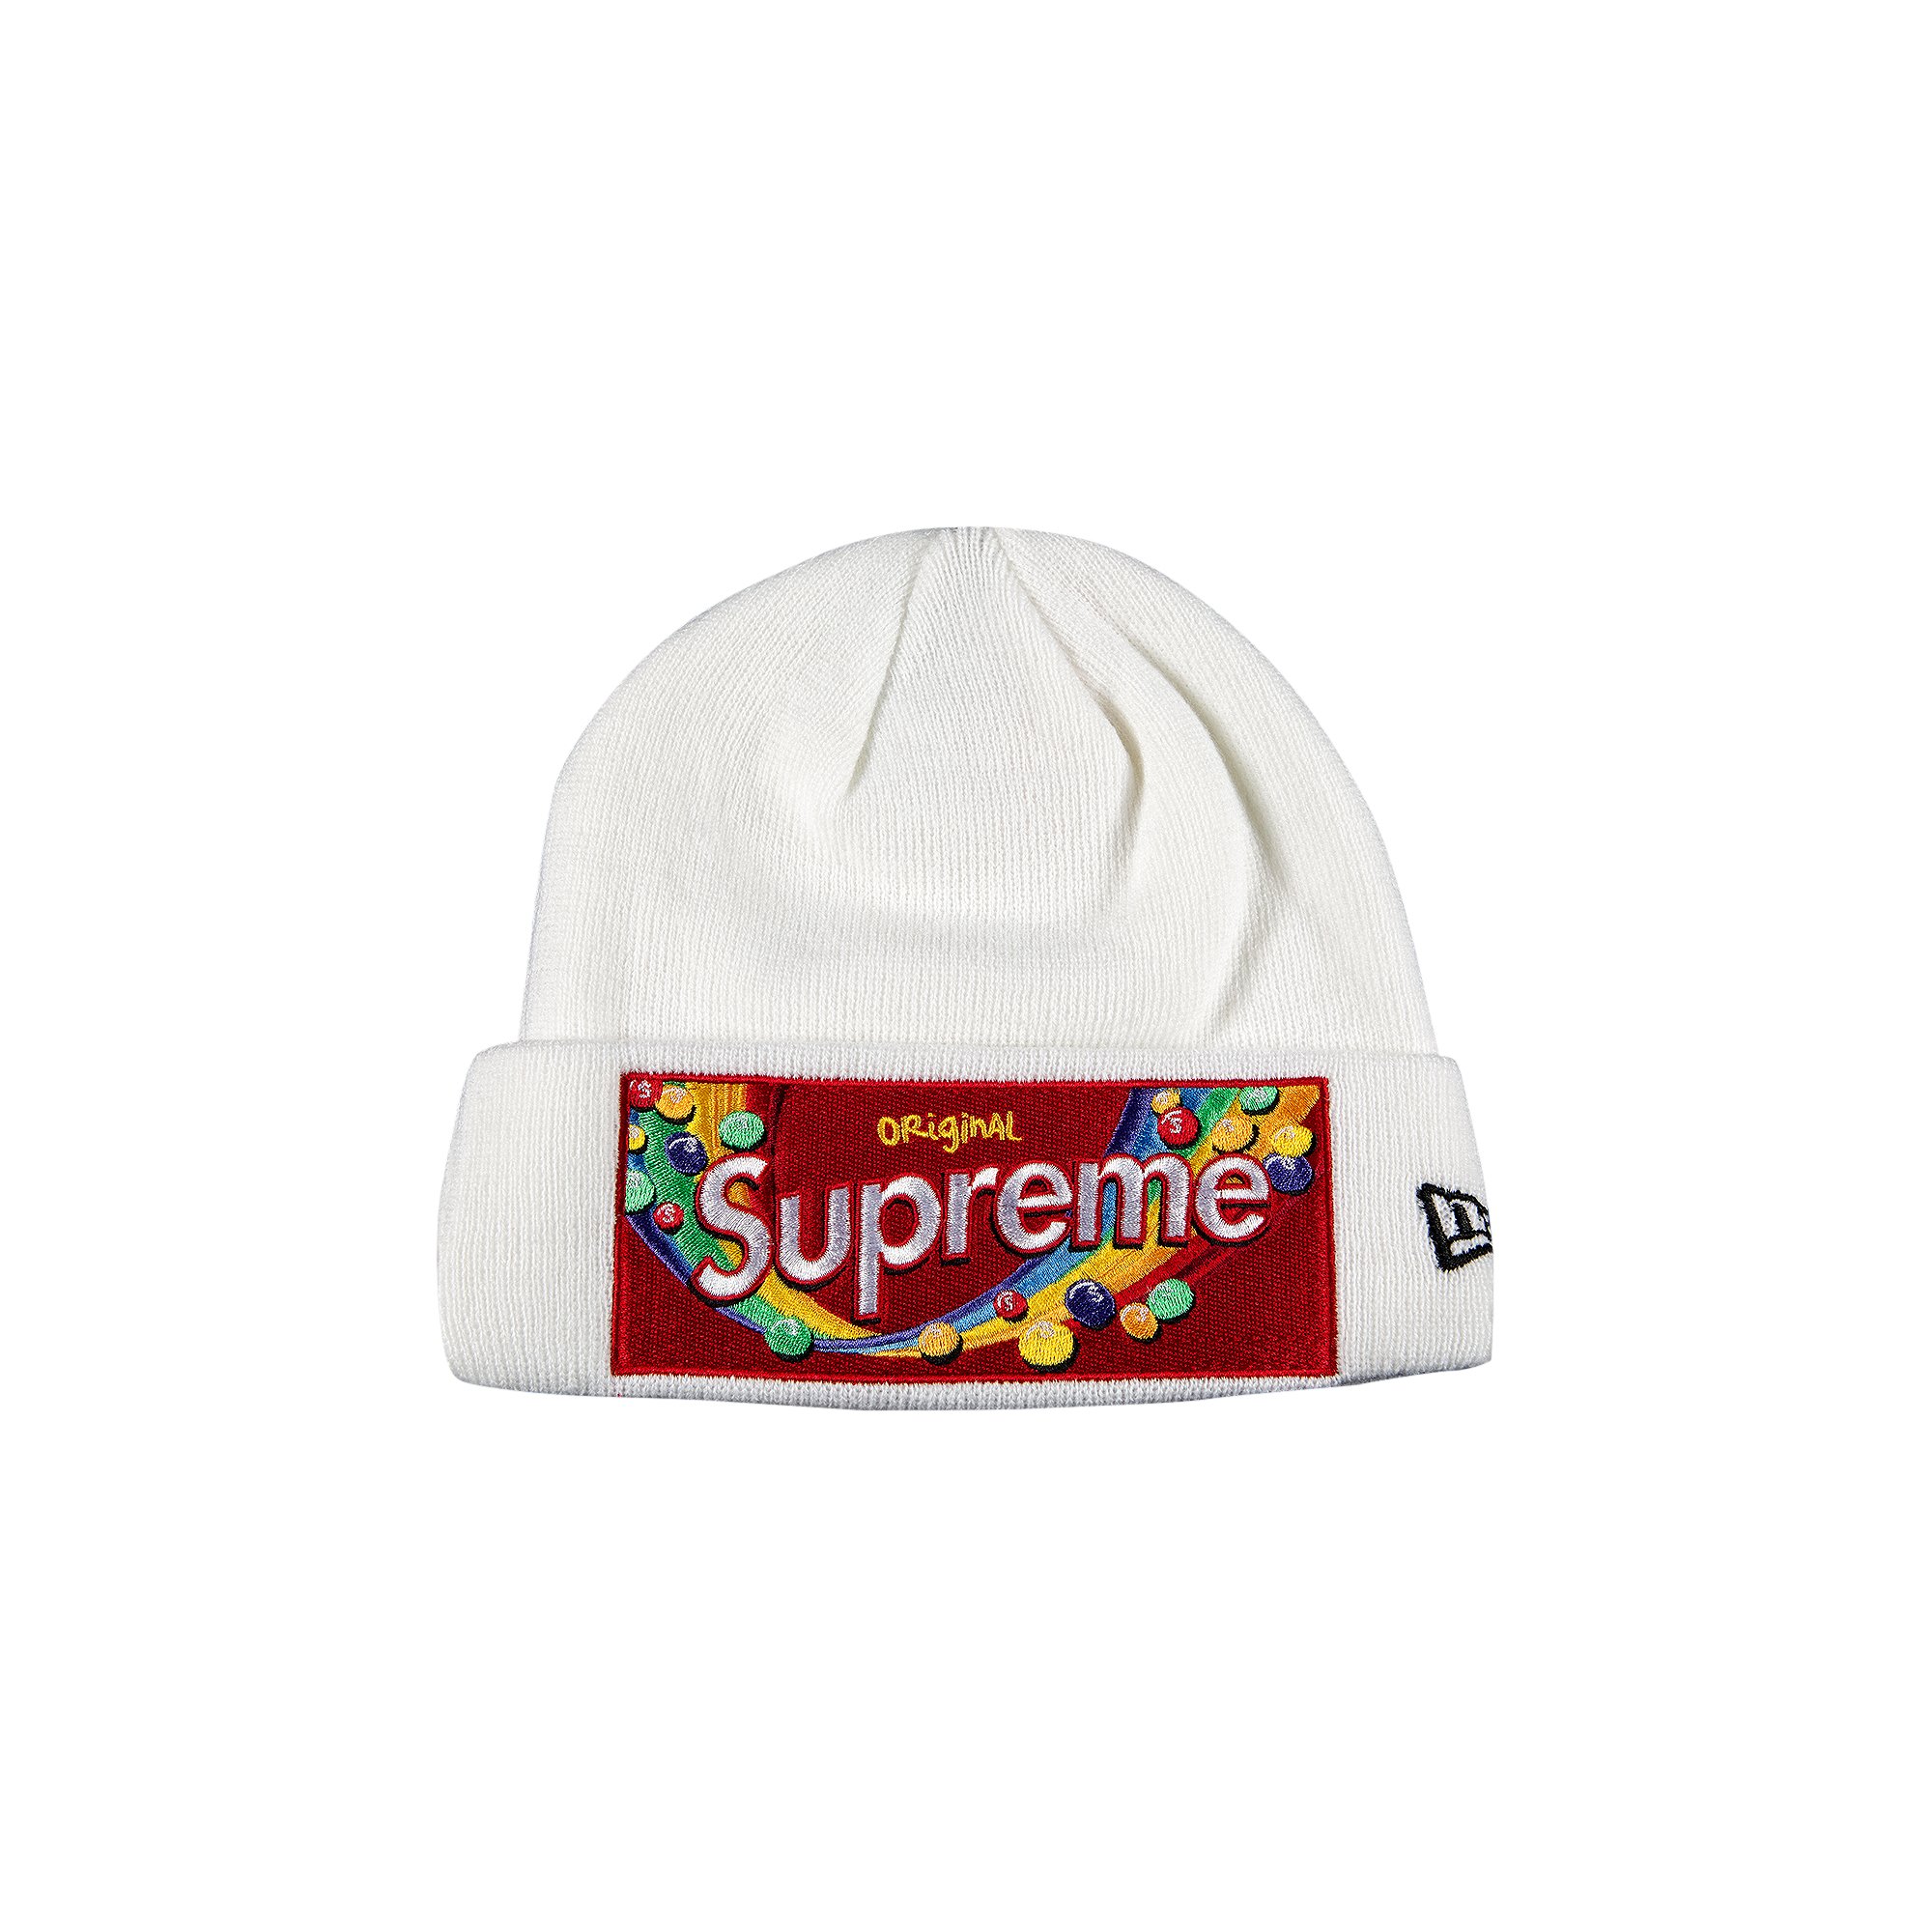 Supreme x Skittles x New Era Beanie 'White'